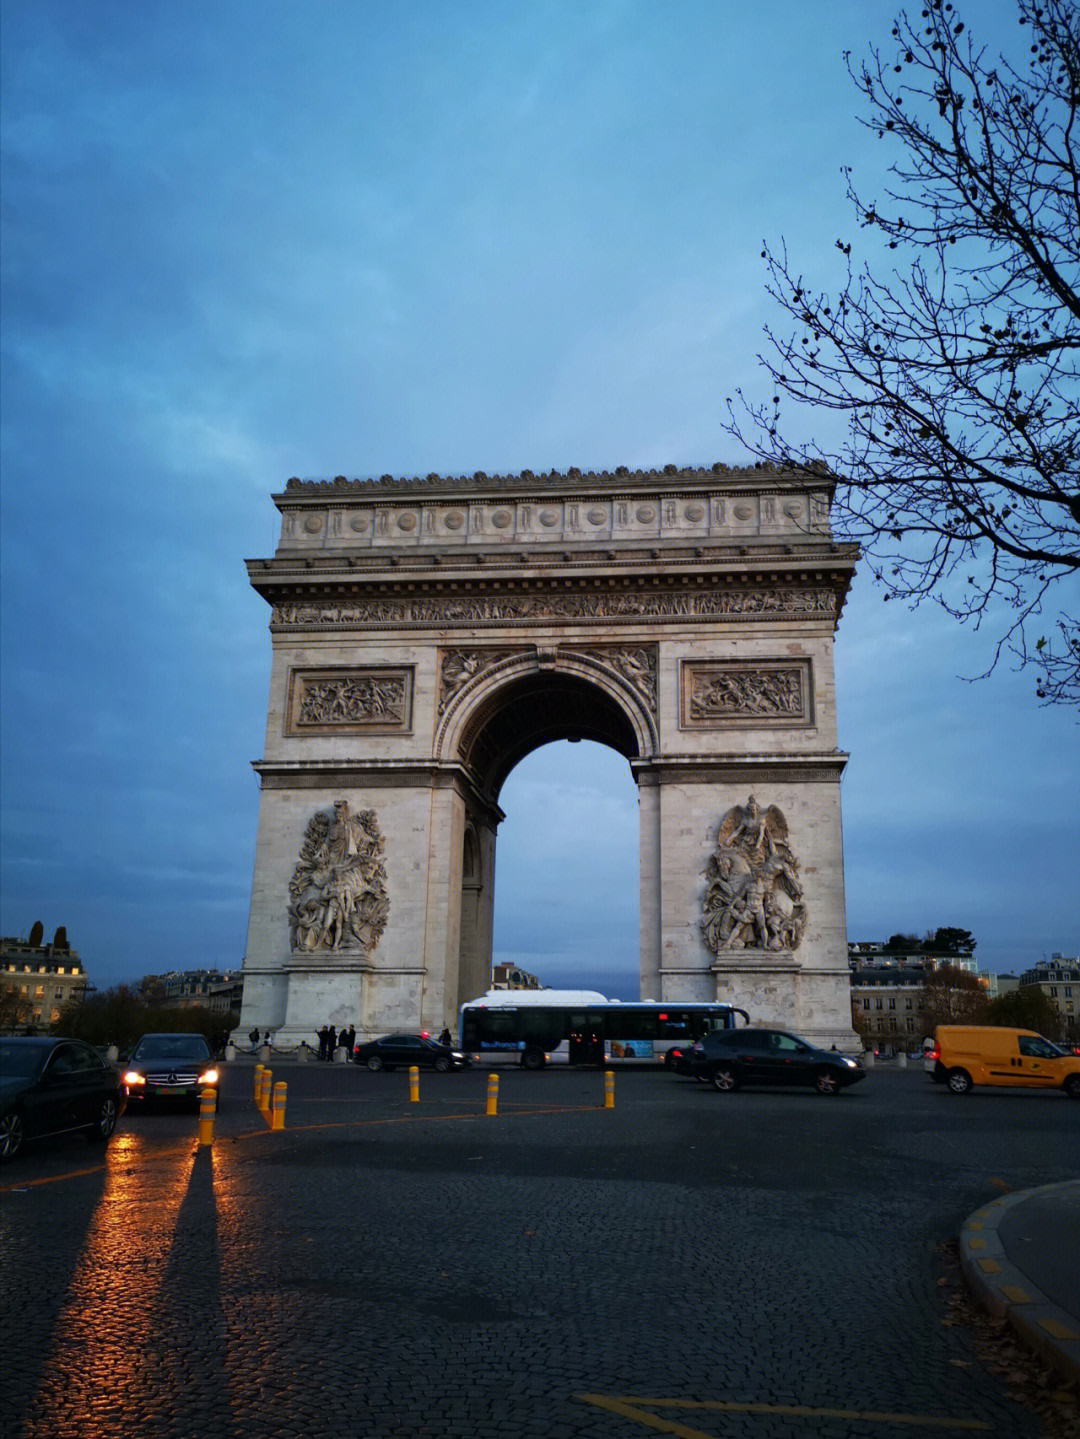 【巴黎凯旋门】是拿破仑为纪念1805年打败俄奥联军的胜利,于1806年